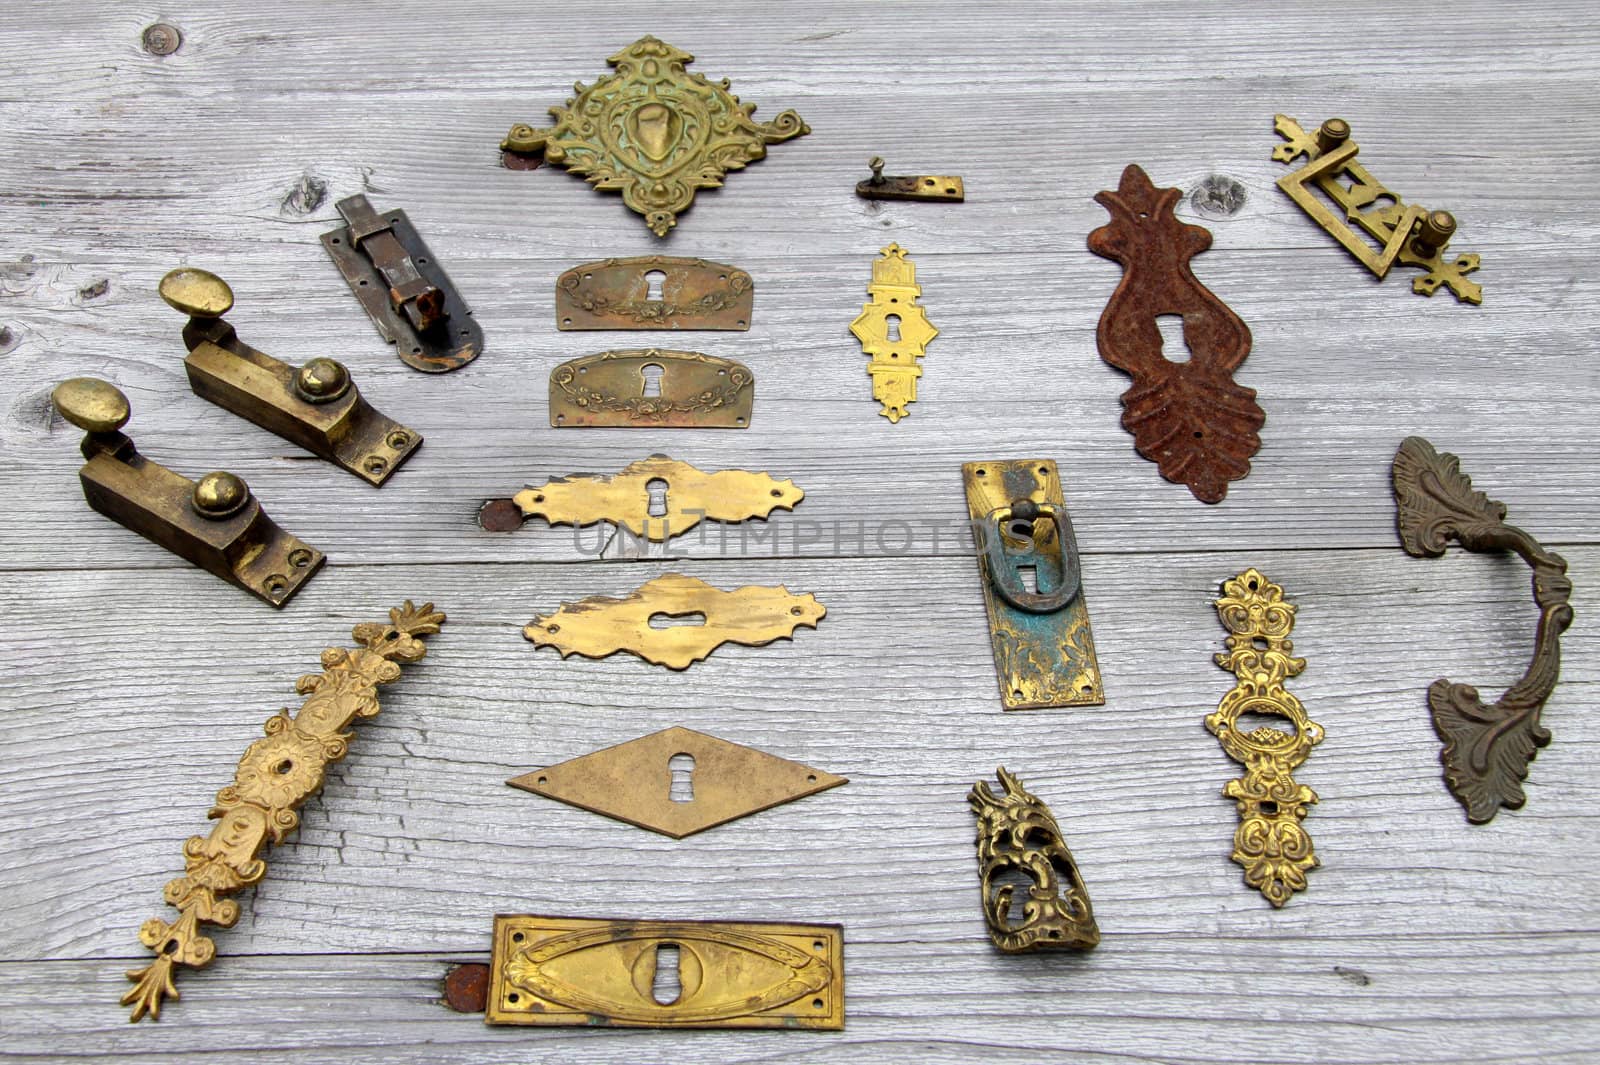 Many antique door locks and hardware by Farina6000